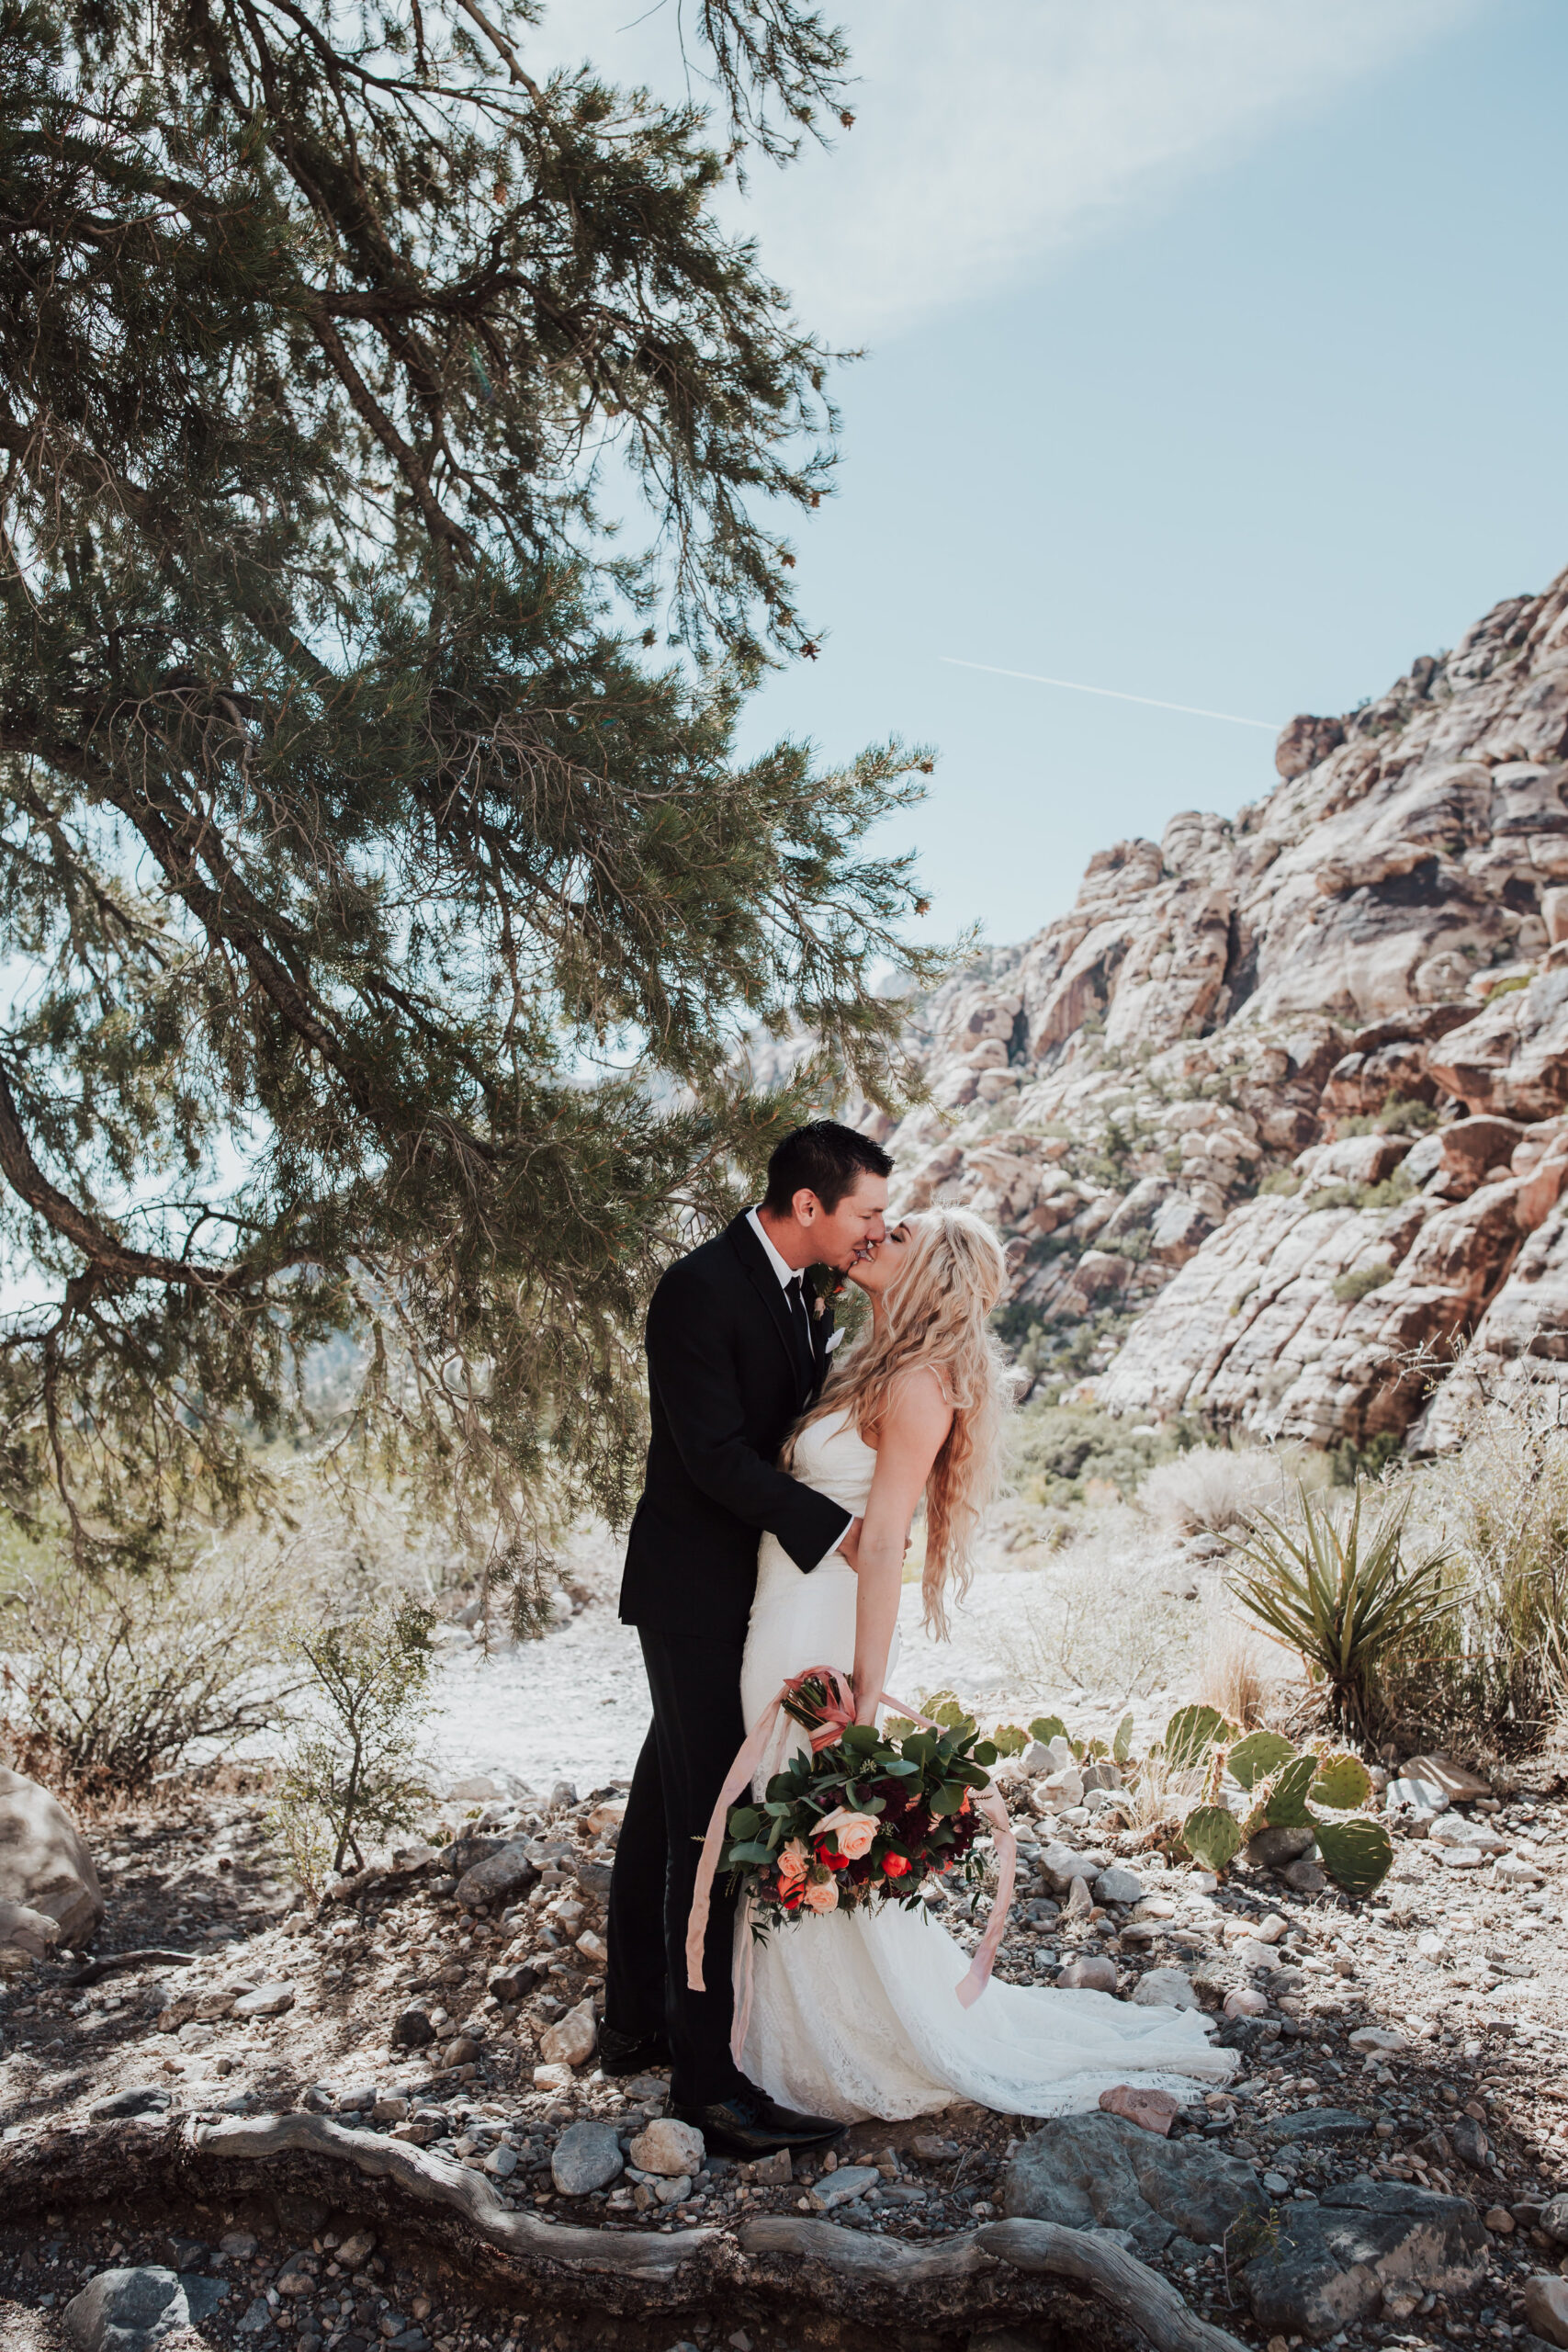 Rustic Bloom Photography | Bride + Groom Desert Elopement